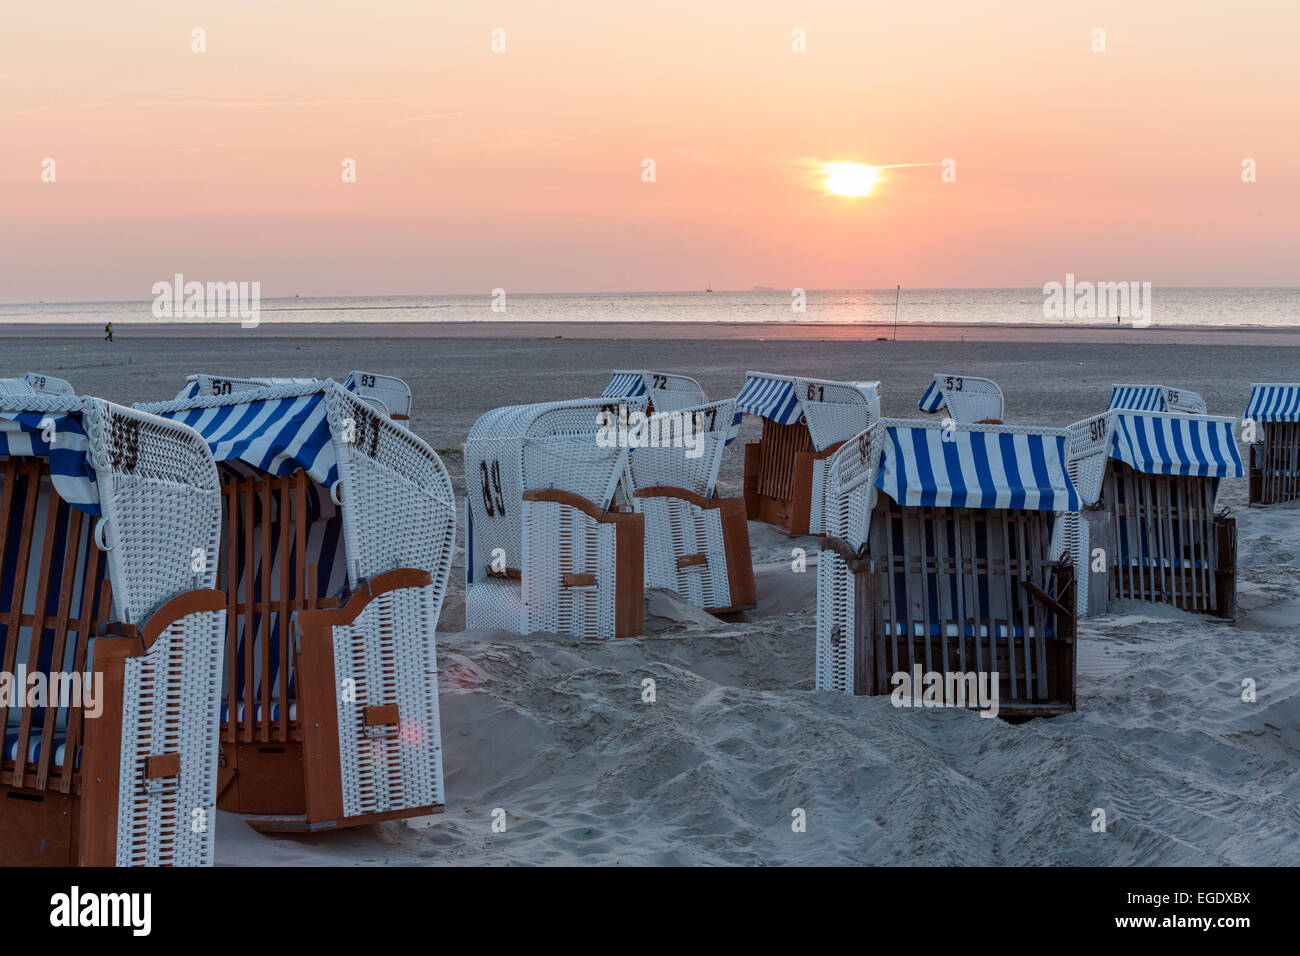 Liegestühle am Strand bei Sonnenuntergang, Insel Spiekeroog, Nordsee, Ostfriesischen Inseln, Ostfriesland, Niedersachsen, Deutschland, Europa Stockfoto